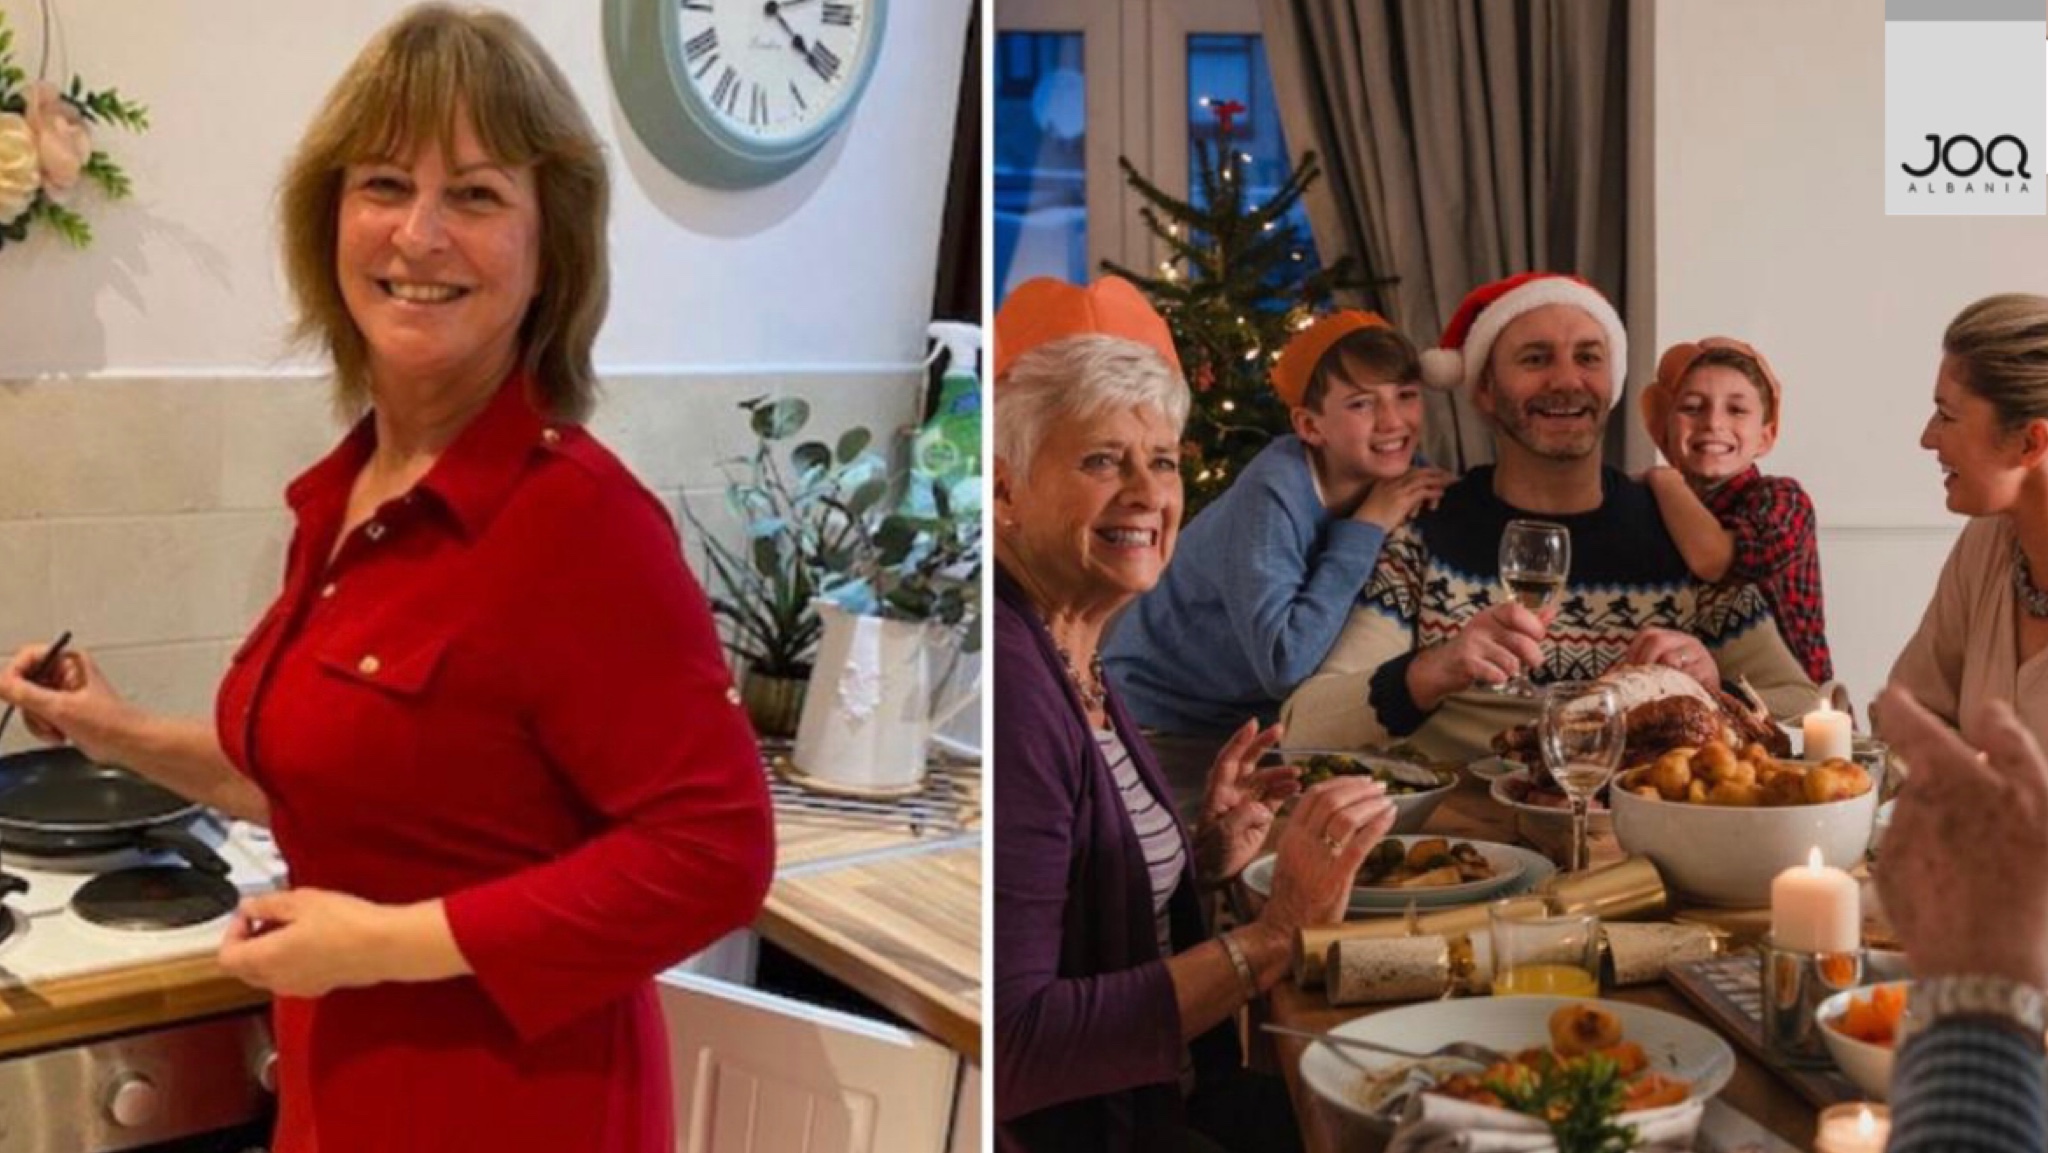 Gruaja tarifon me para çdo anëtar të familjes së saj pasi i gatuan darkën e Krishtlindjeve